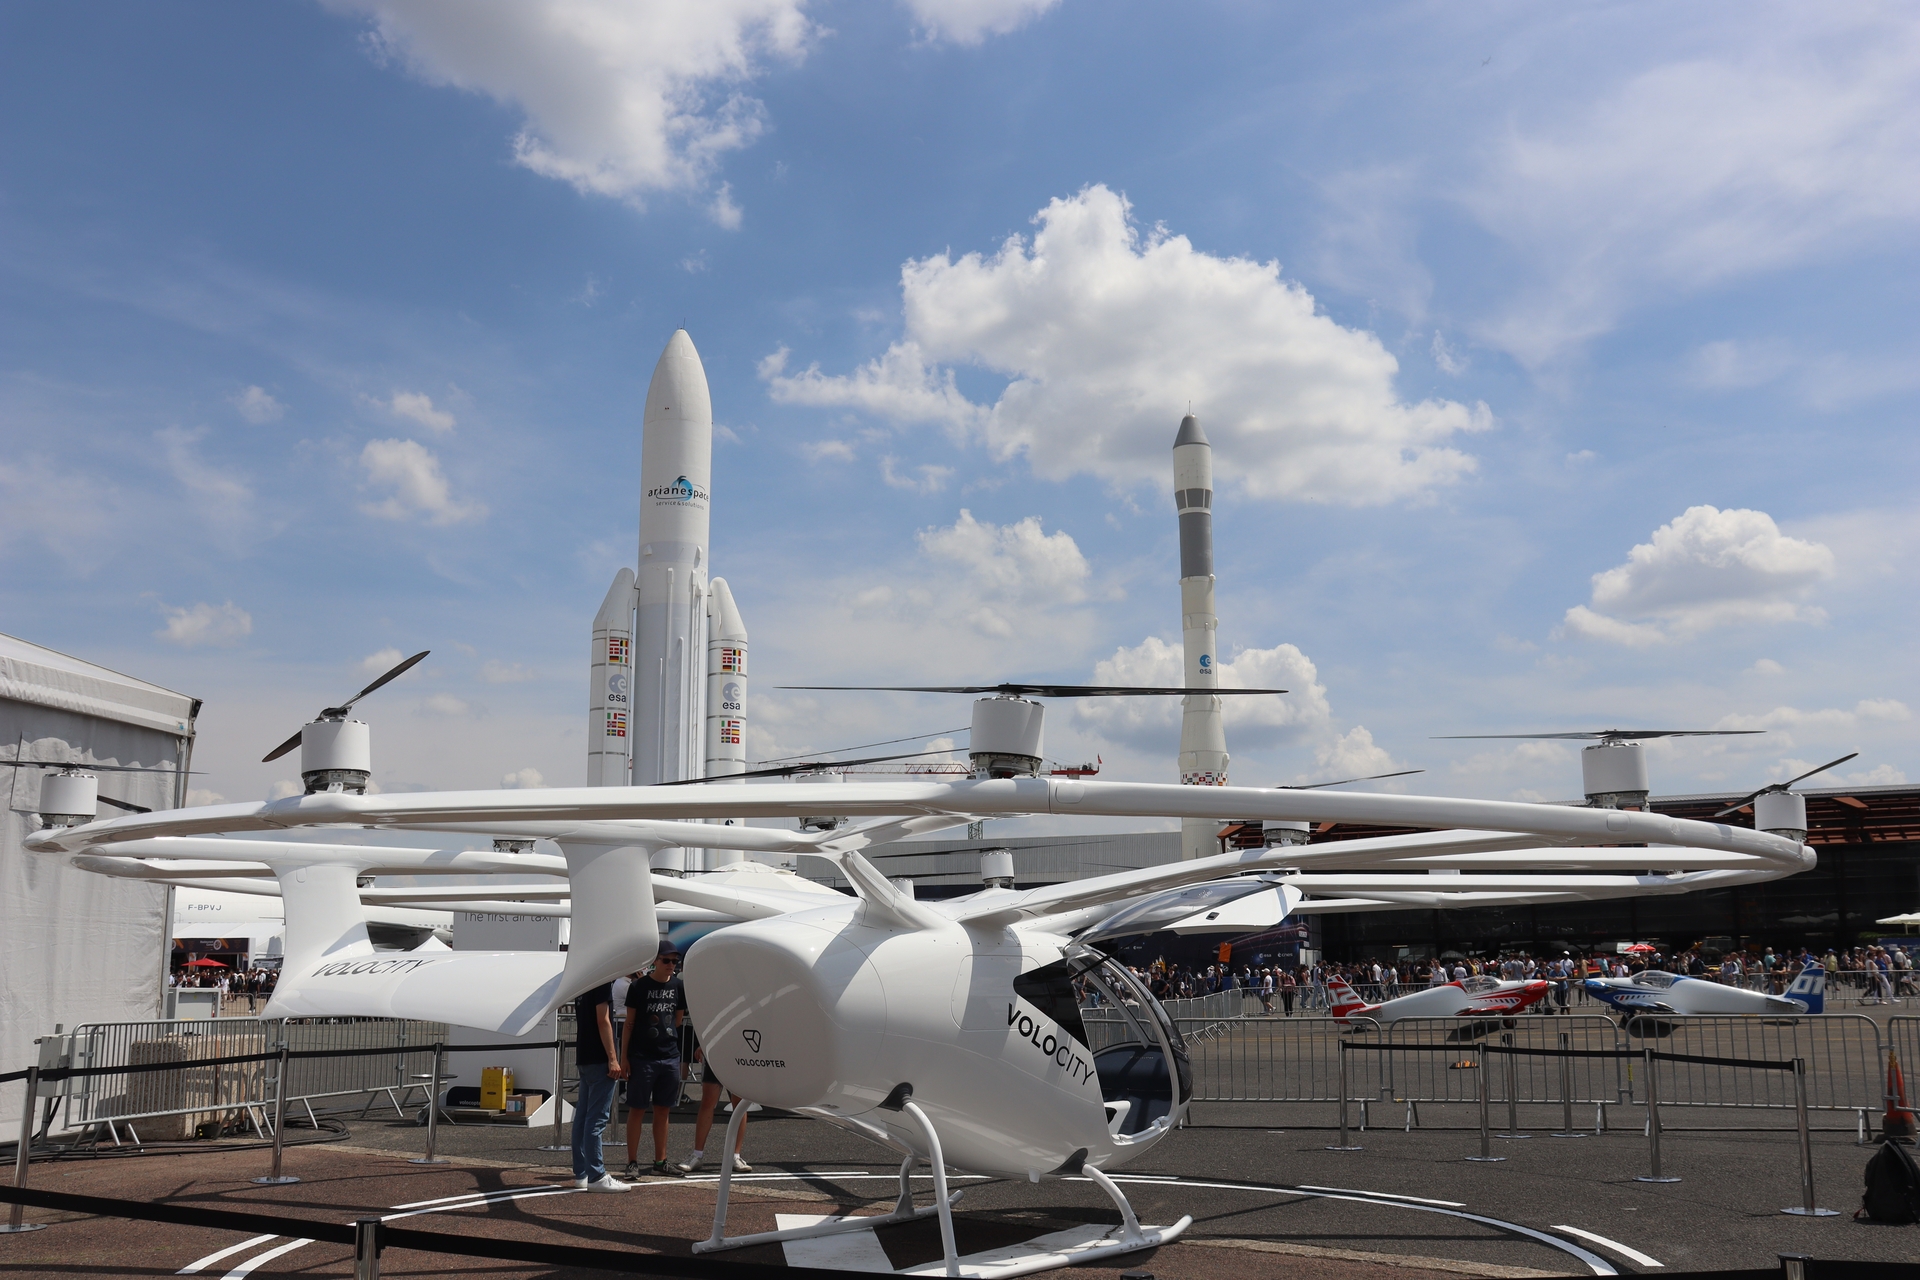 A fejlesztő Volocopter tervei szerint a Volocity lesz az első olyan légitaxi, ami a 2024-es párizsi olimpia idején utasokat fog szállítani. A 18 rotor mozgatta jármű teljes egészében elektromos üzemű, kifejezetten rövid távú, elsősorban városon belüli közlekedésre tervezték, ezért kifejezetten előnyösek az alacsony zajszintű elektromos motorok